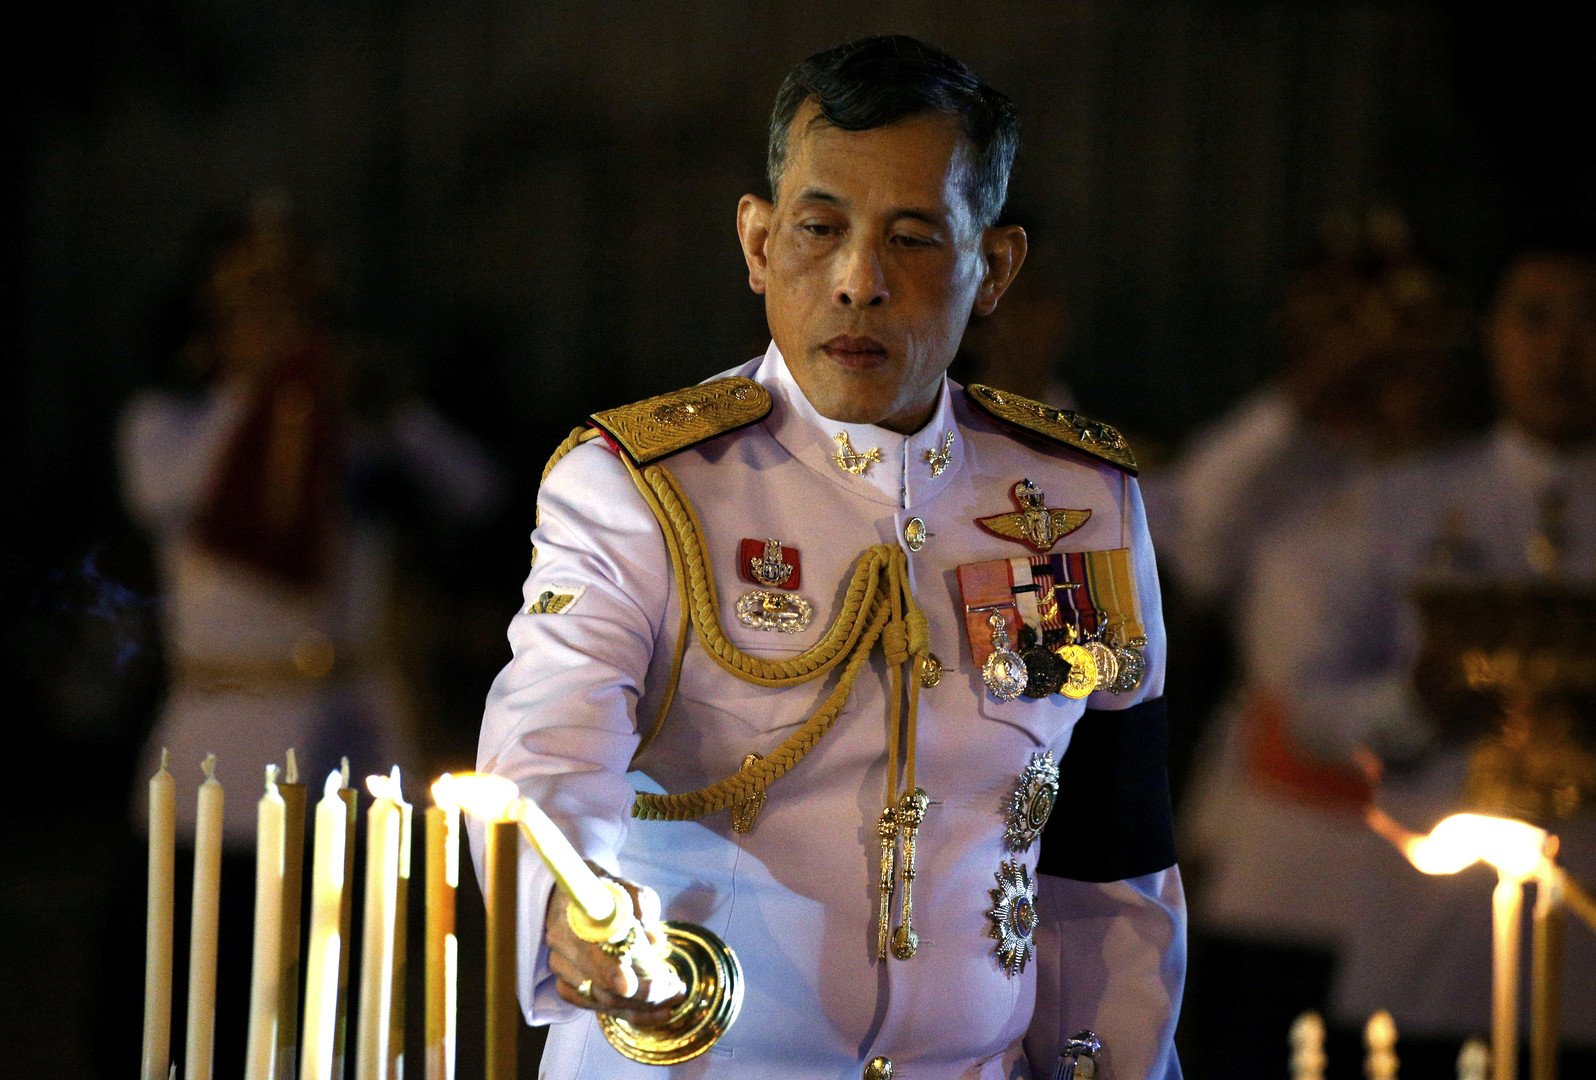 شاهد.. طقوس غريبة في مراسم زواج ملك تايلاند من نائبة رئيس فريقه الأمني 